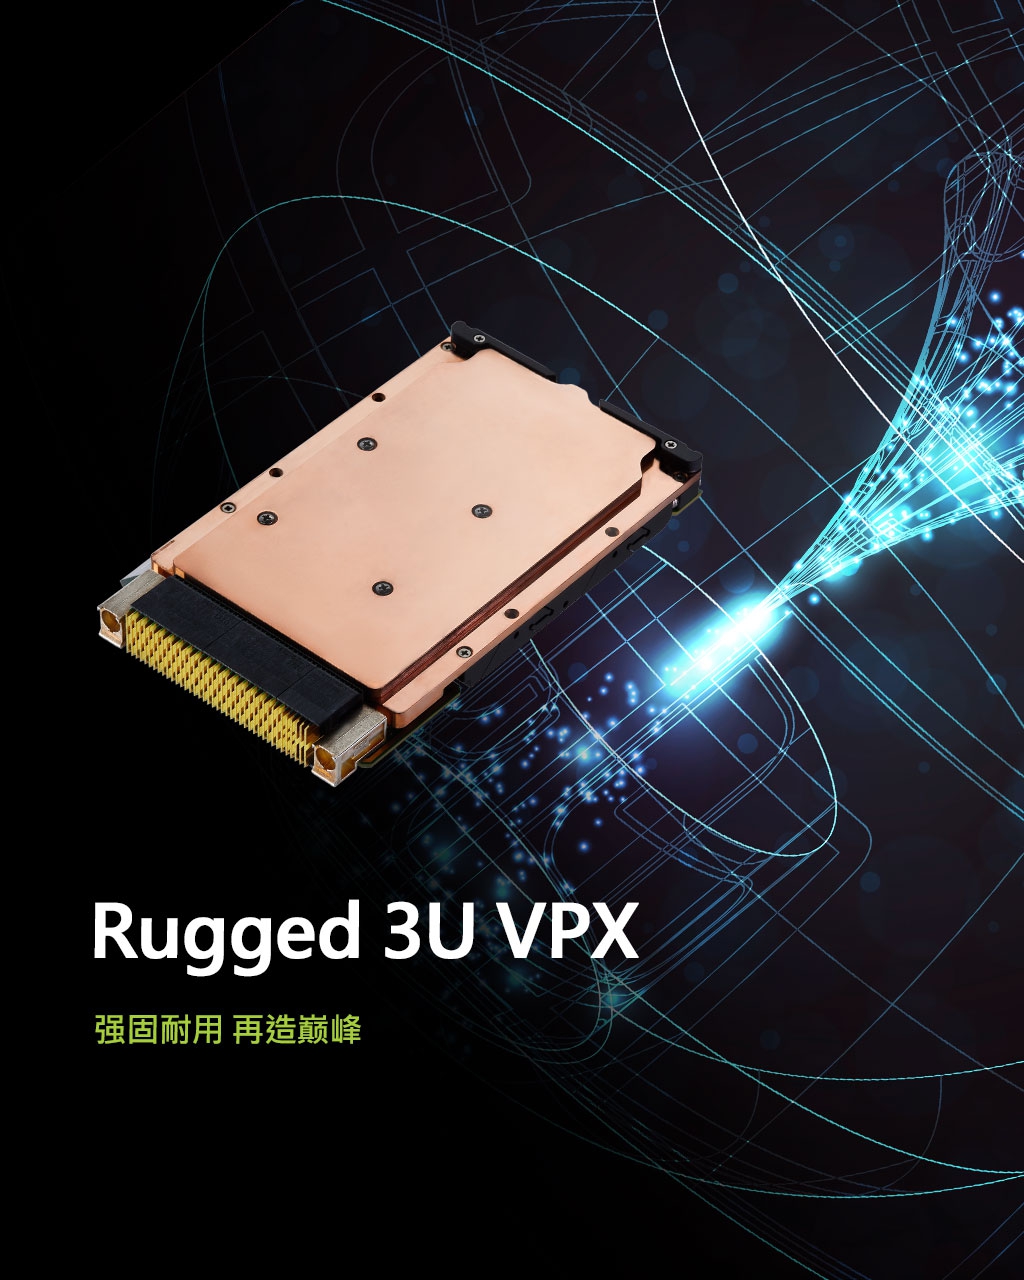 Rugged 3U VPX - Polishing GPU-powered AI